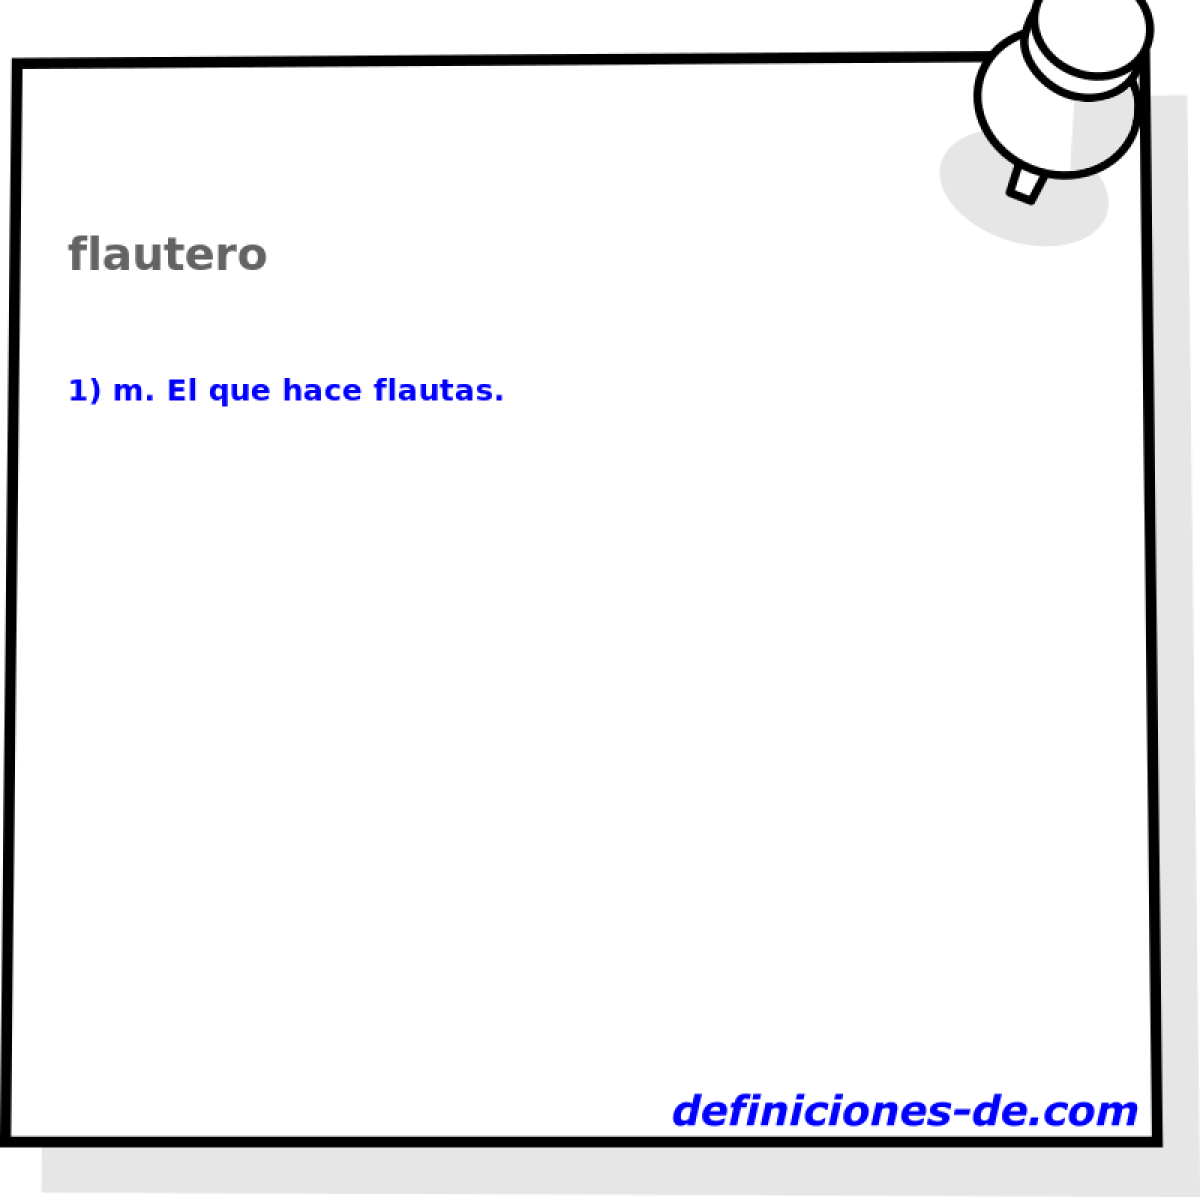 flautero 